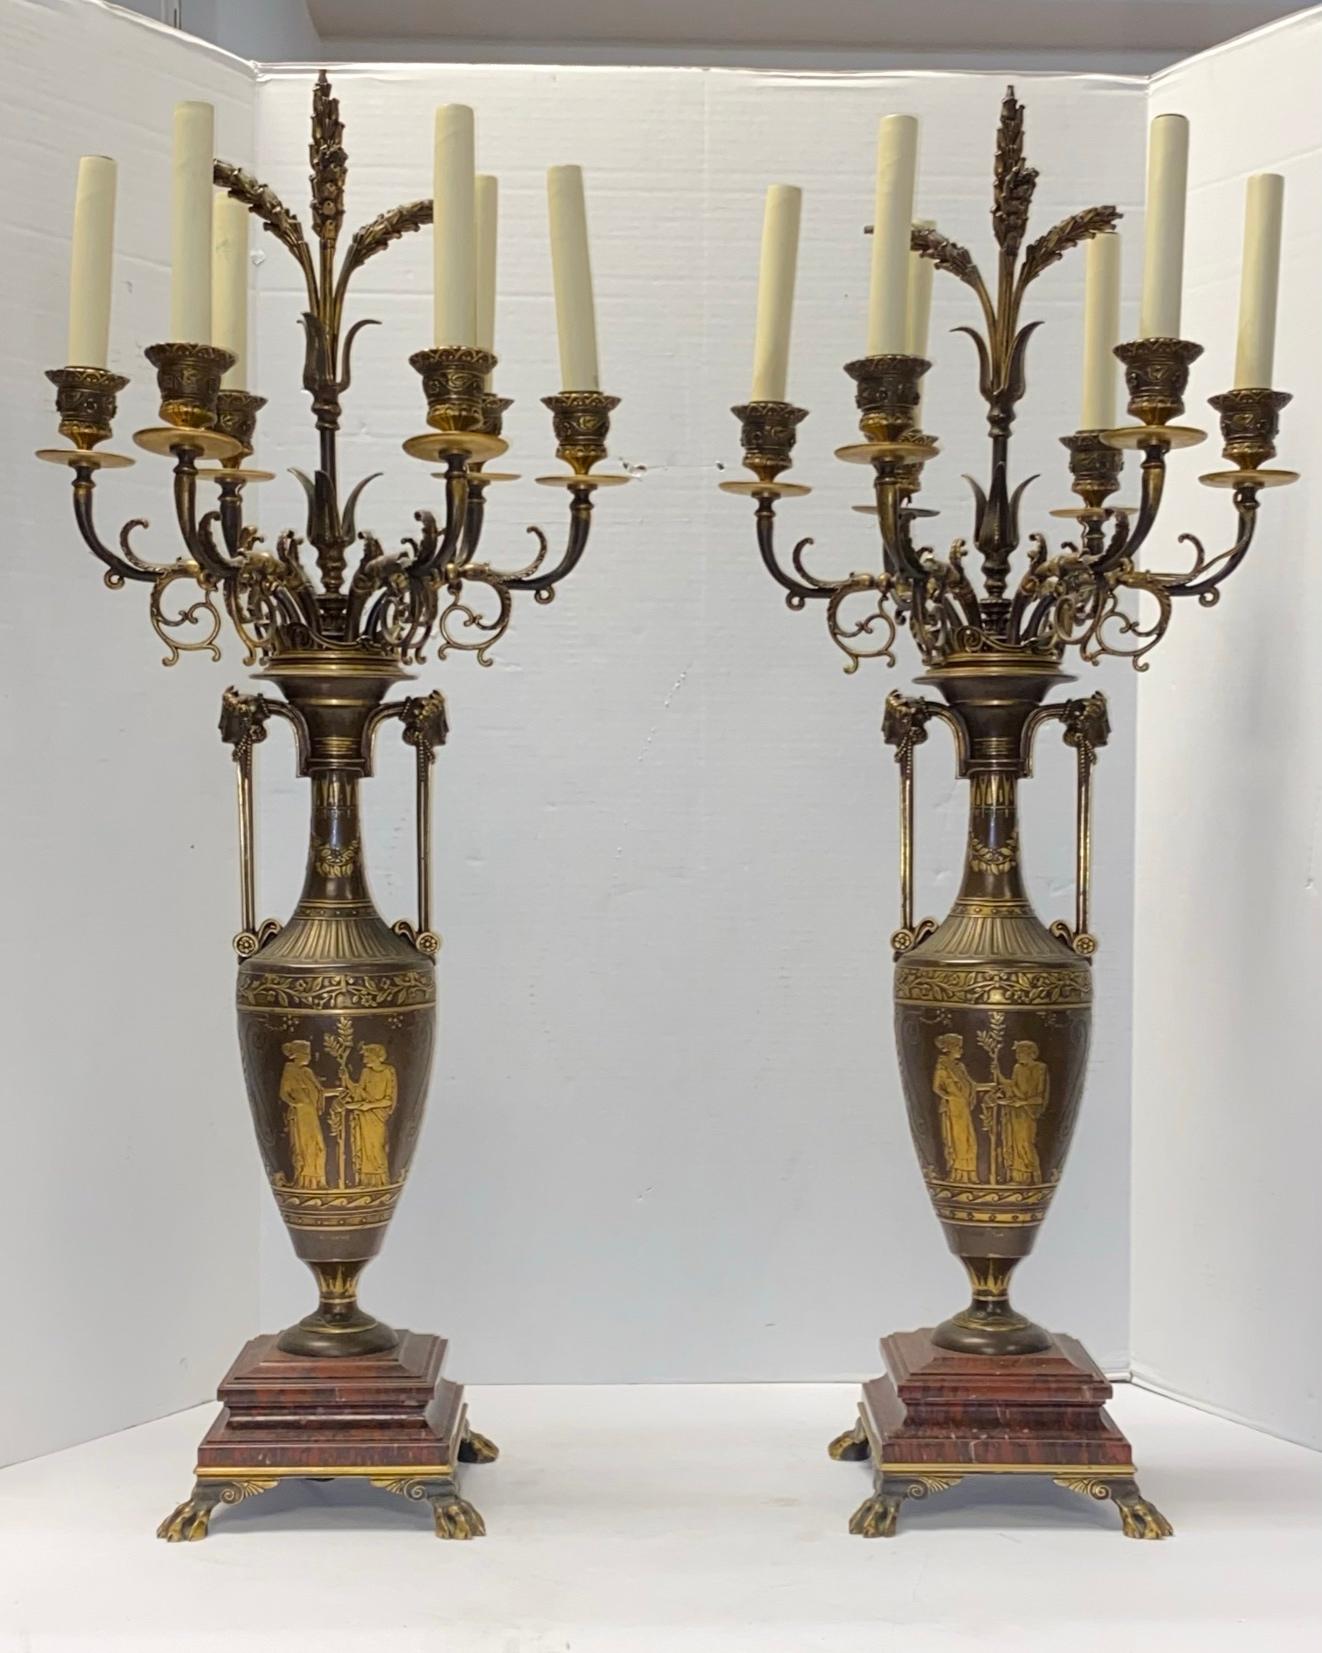 Paire de grands candélabres néo-grecques français du 19e siècle en bronze patiné avec des reflets dorés sur des bases en marbre rouge.
Câblées comme des lampes .
Signé : F. Barbedienne Fondeur.